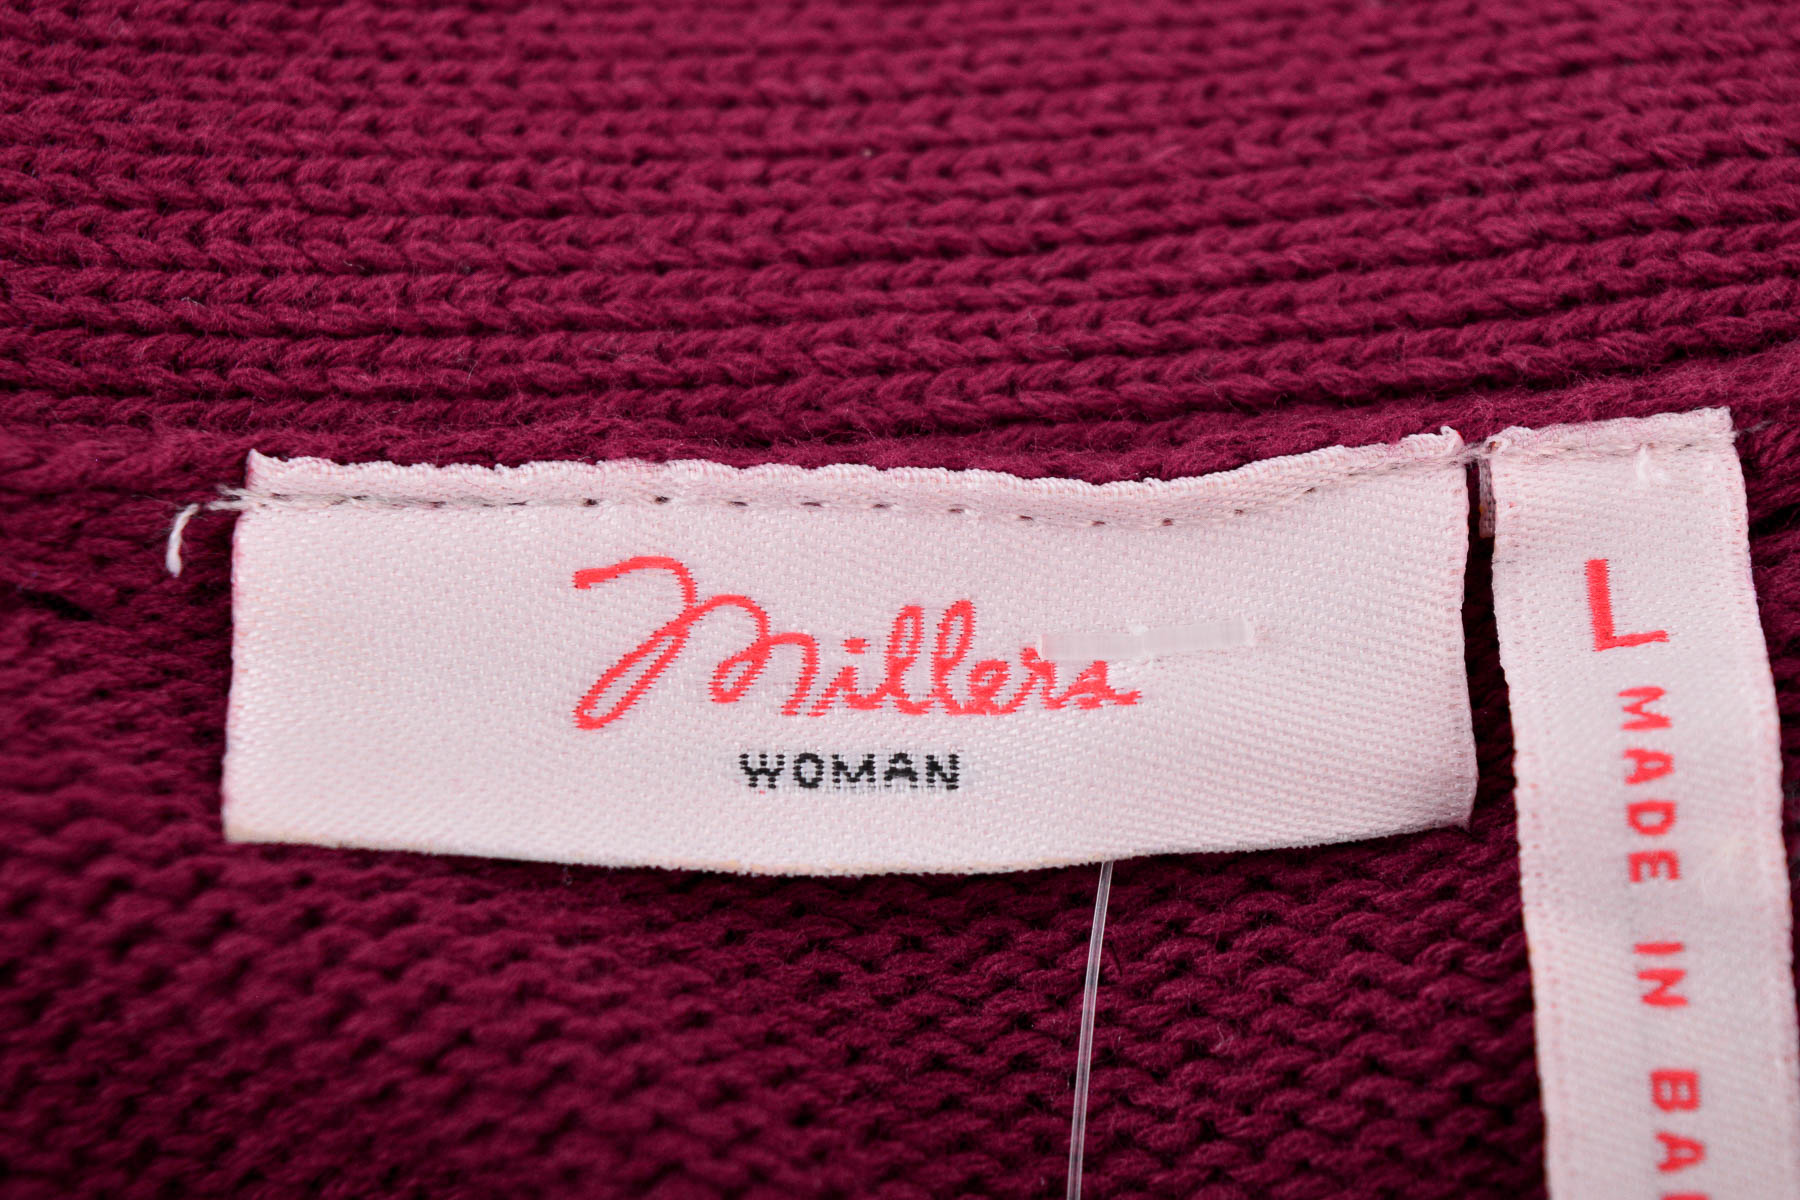 Women's sweater - Millers - 2